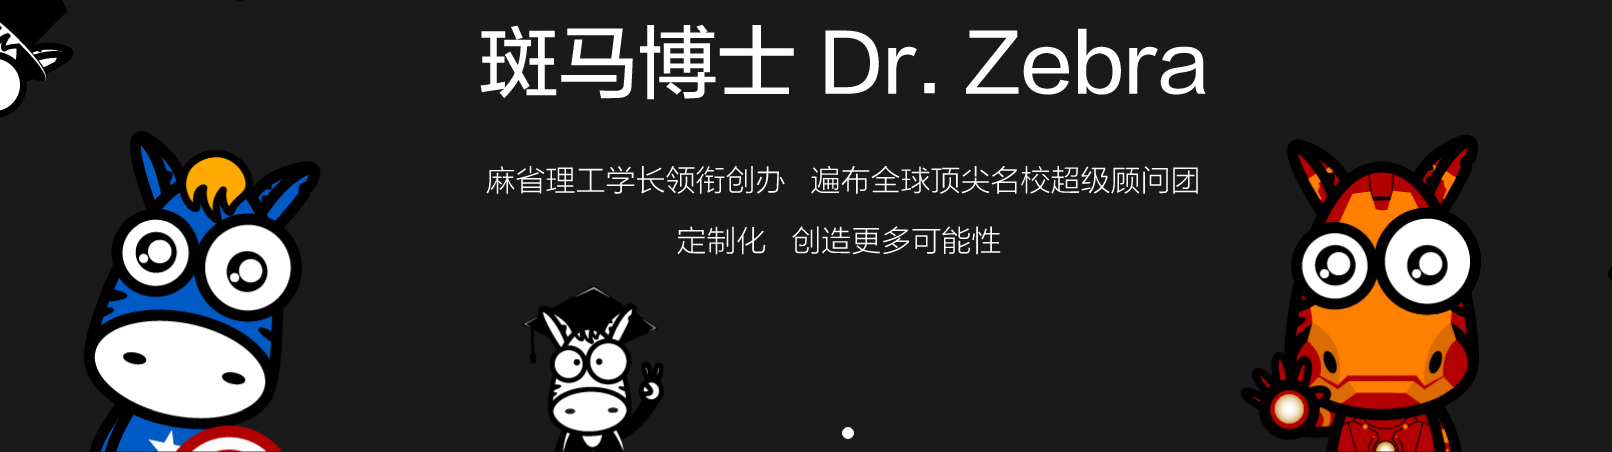 斑马博士, 斑马博士留学中心, Dr. Zebra